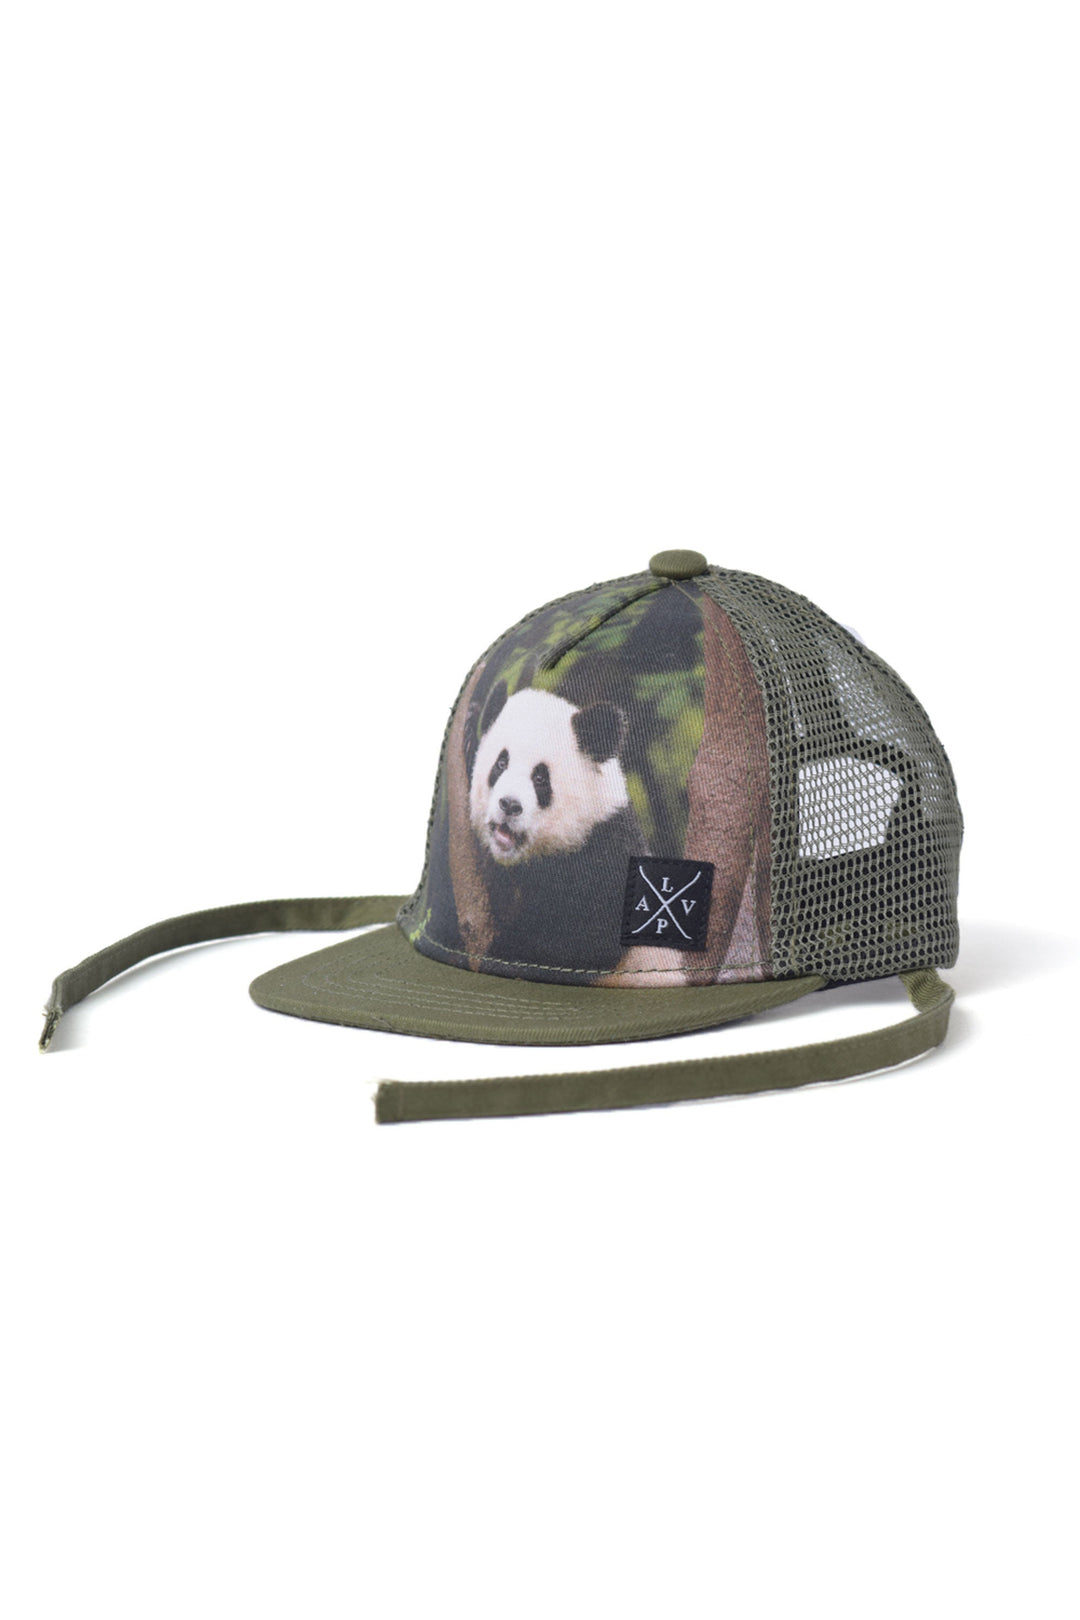 Zoo series mesh cap - Fit Simplistic [Baby]